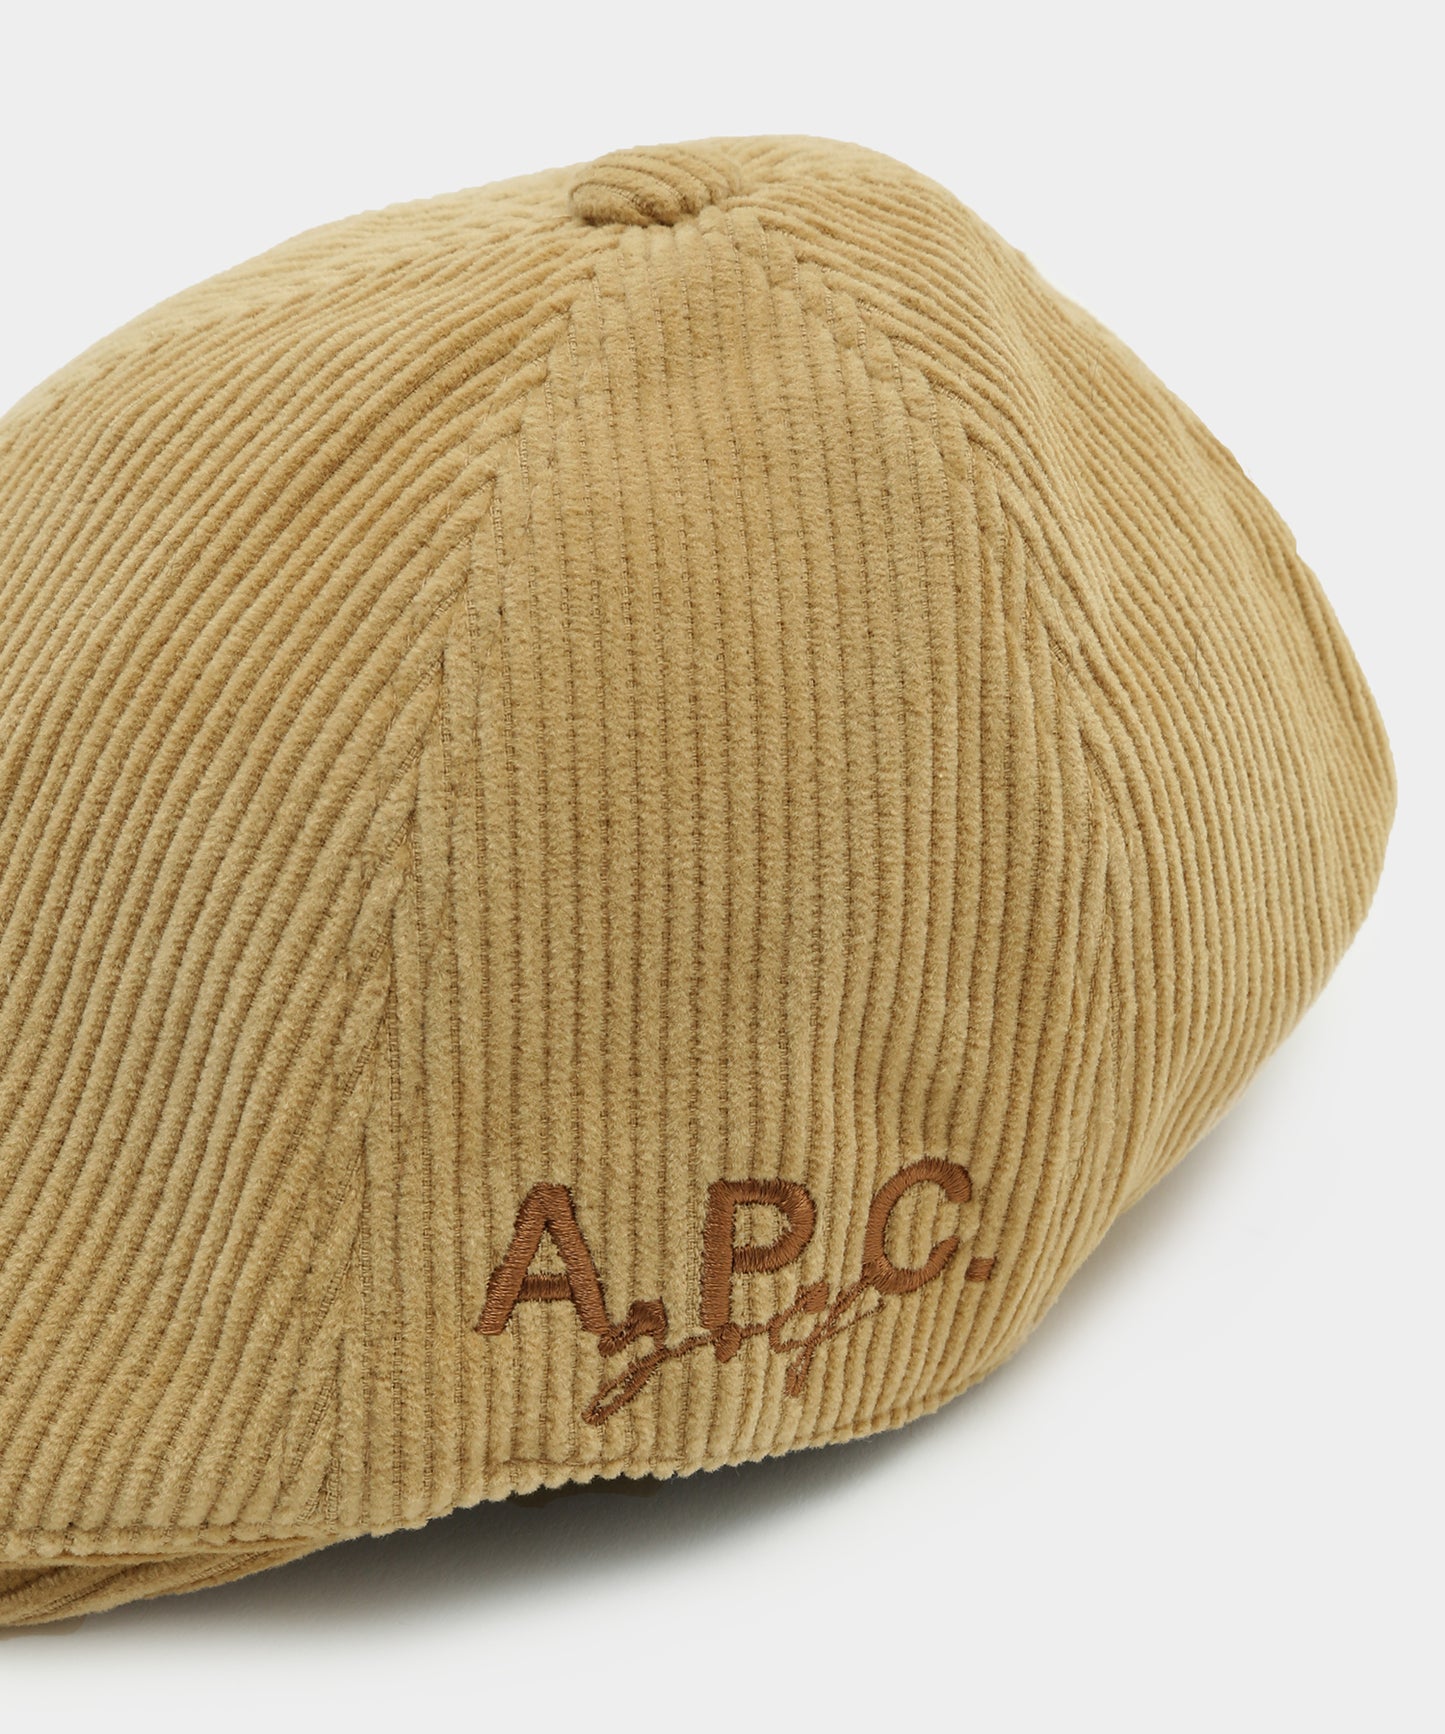 A.P.C.GOLF CAP CAMEL